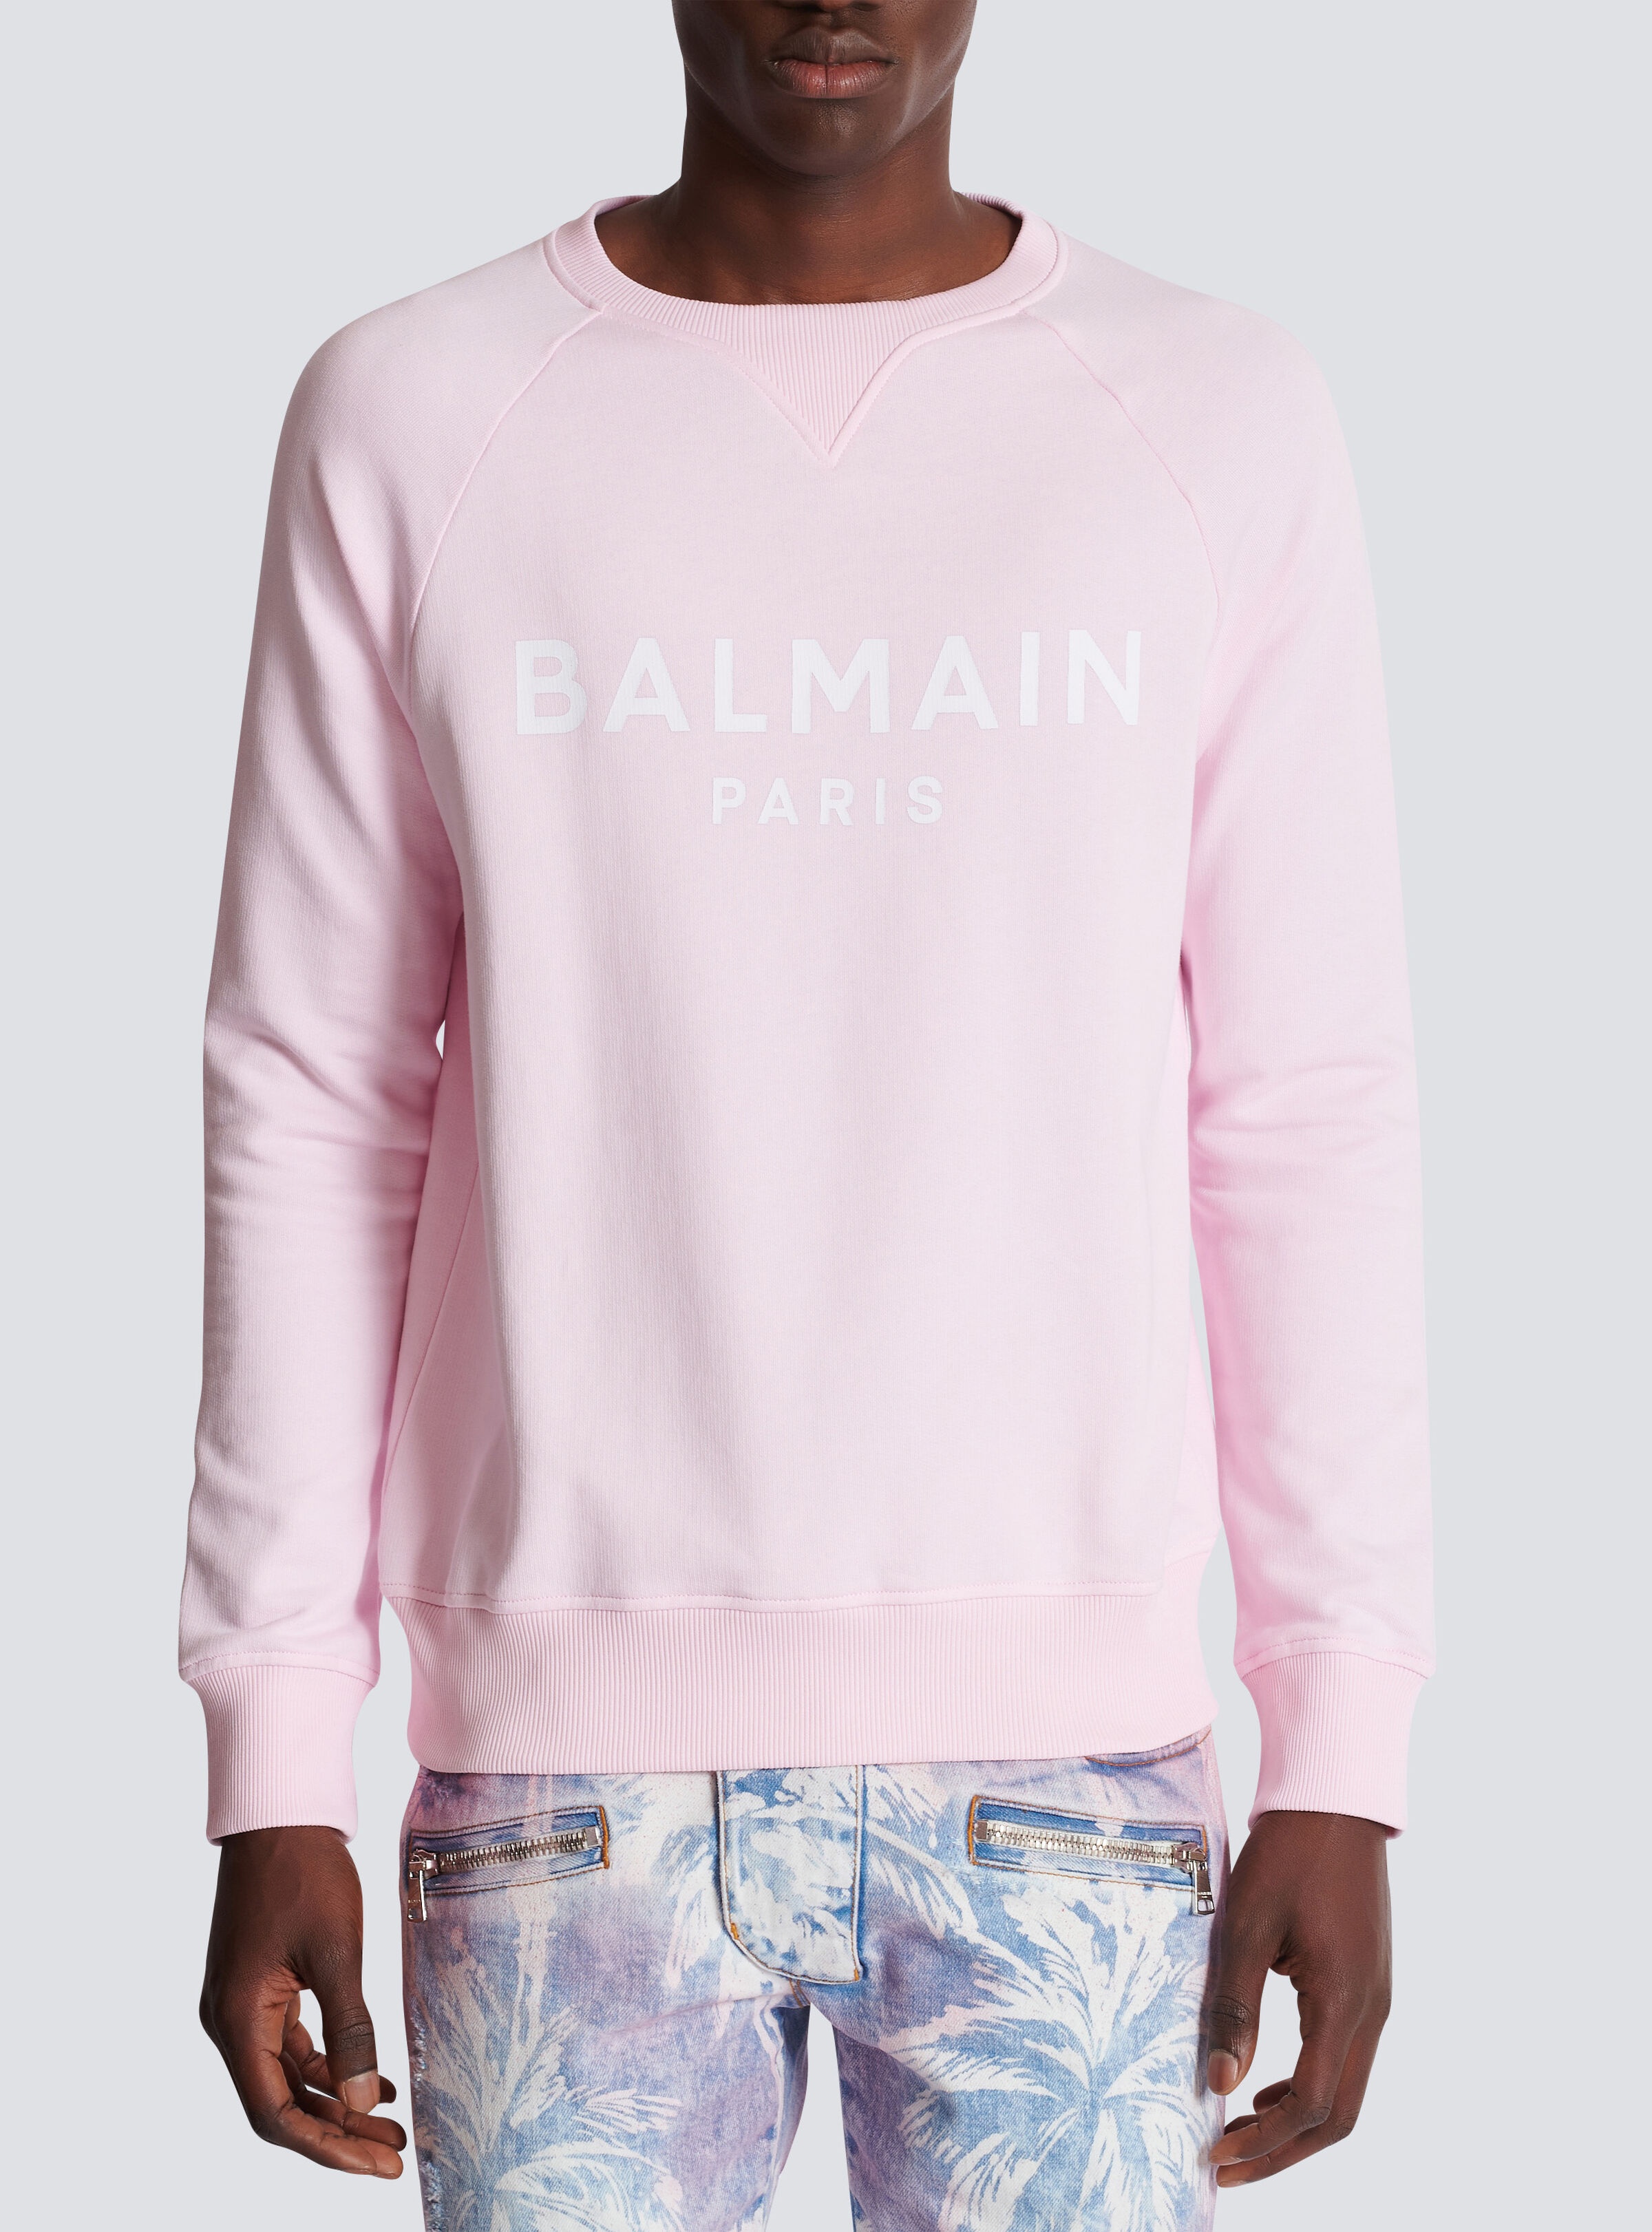 Balmain Paris printed sweatshirt - 5